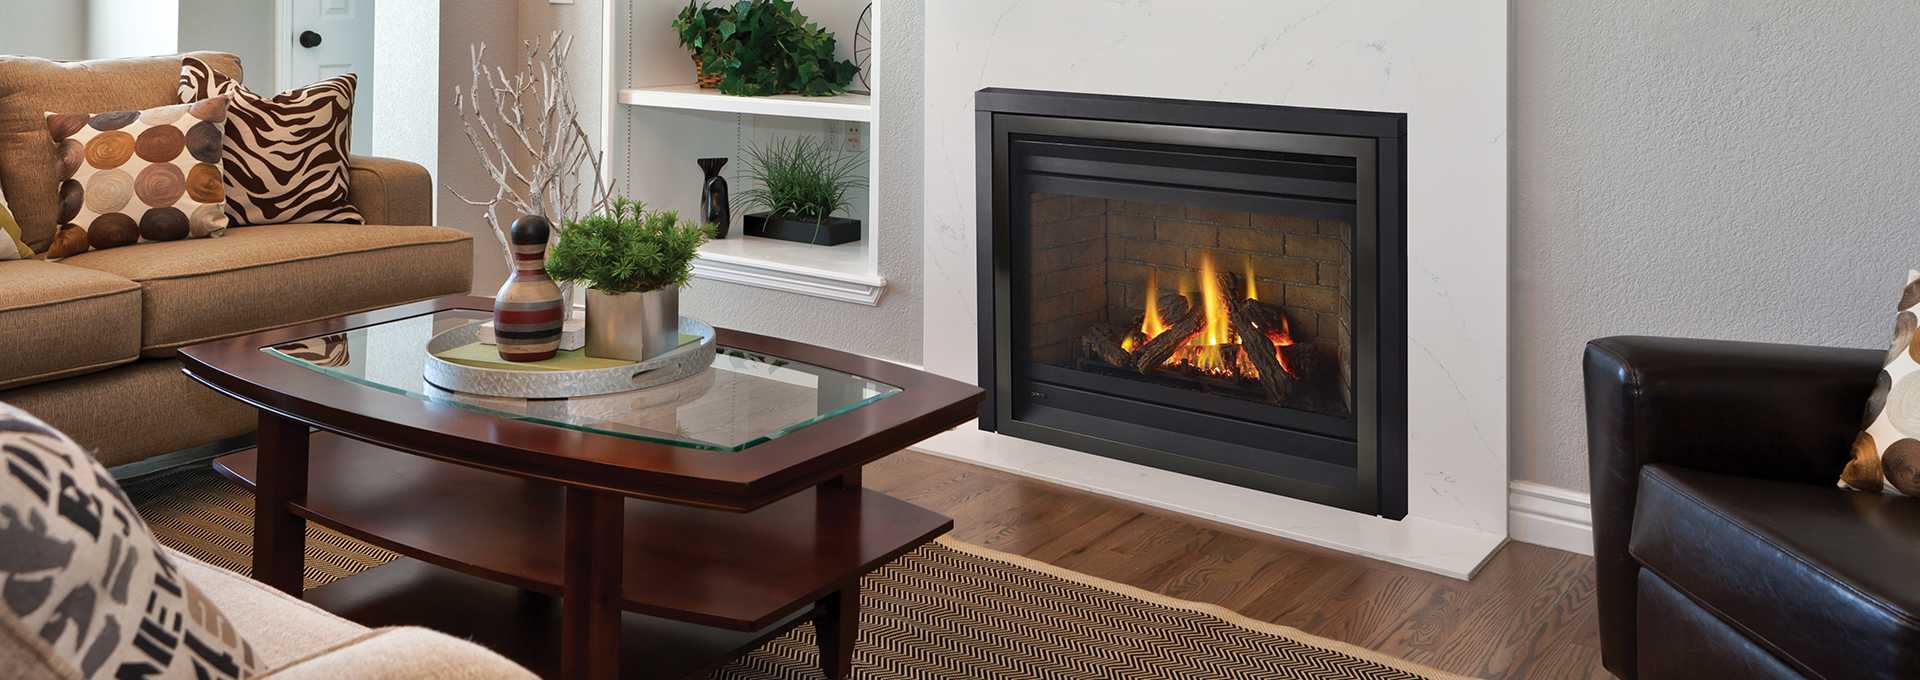 Regency Panorama P36 Traditional Gas Fireplace Toronto Best Price